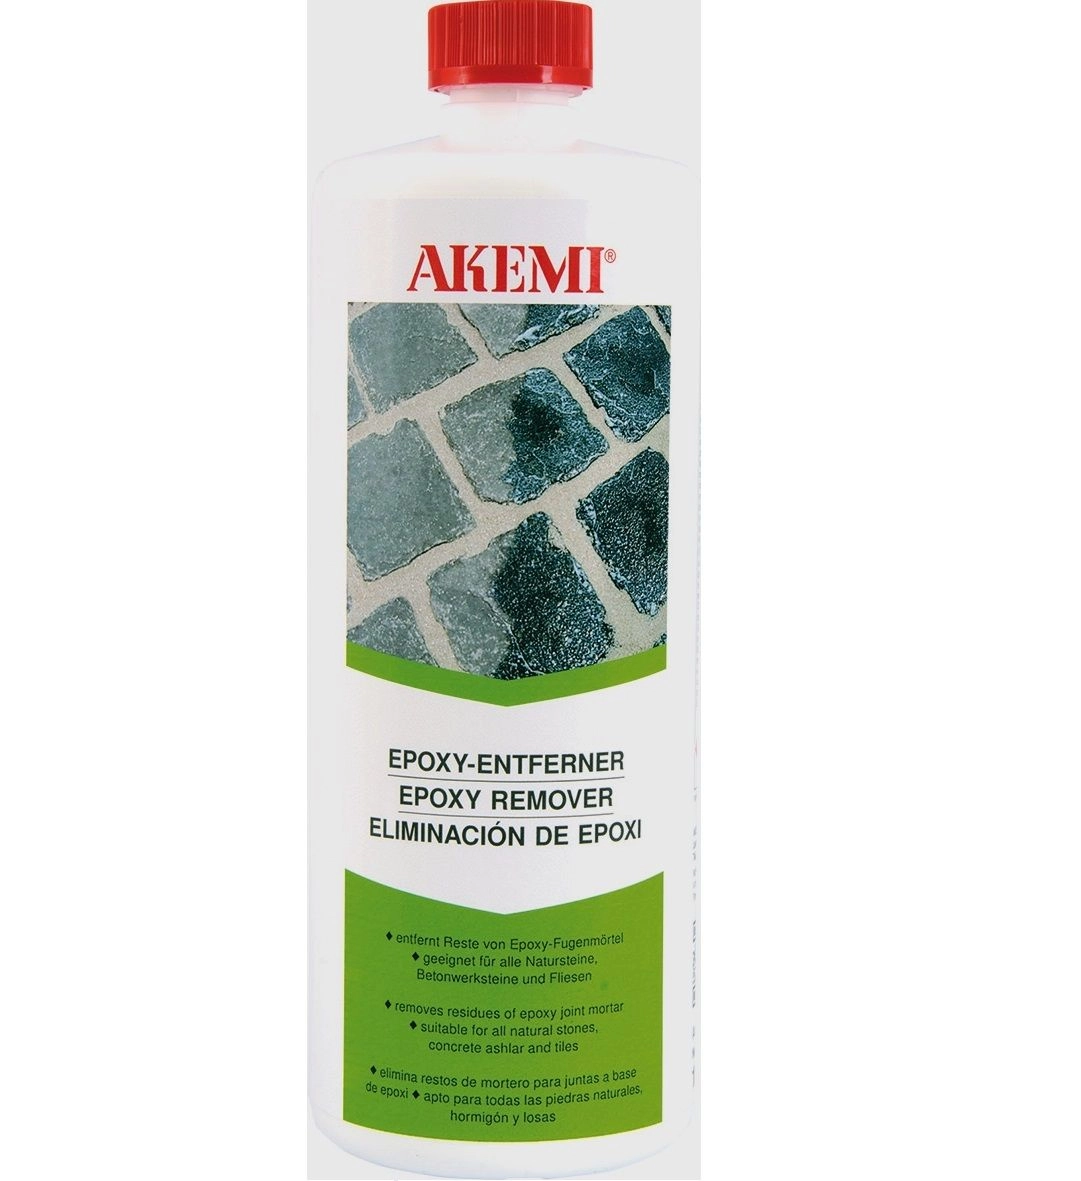 Akemi Epoxy - Entferner 1 Liter Flasche 